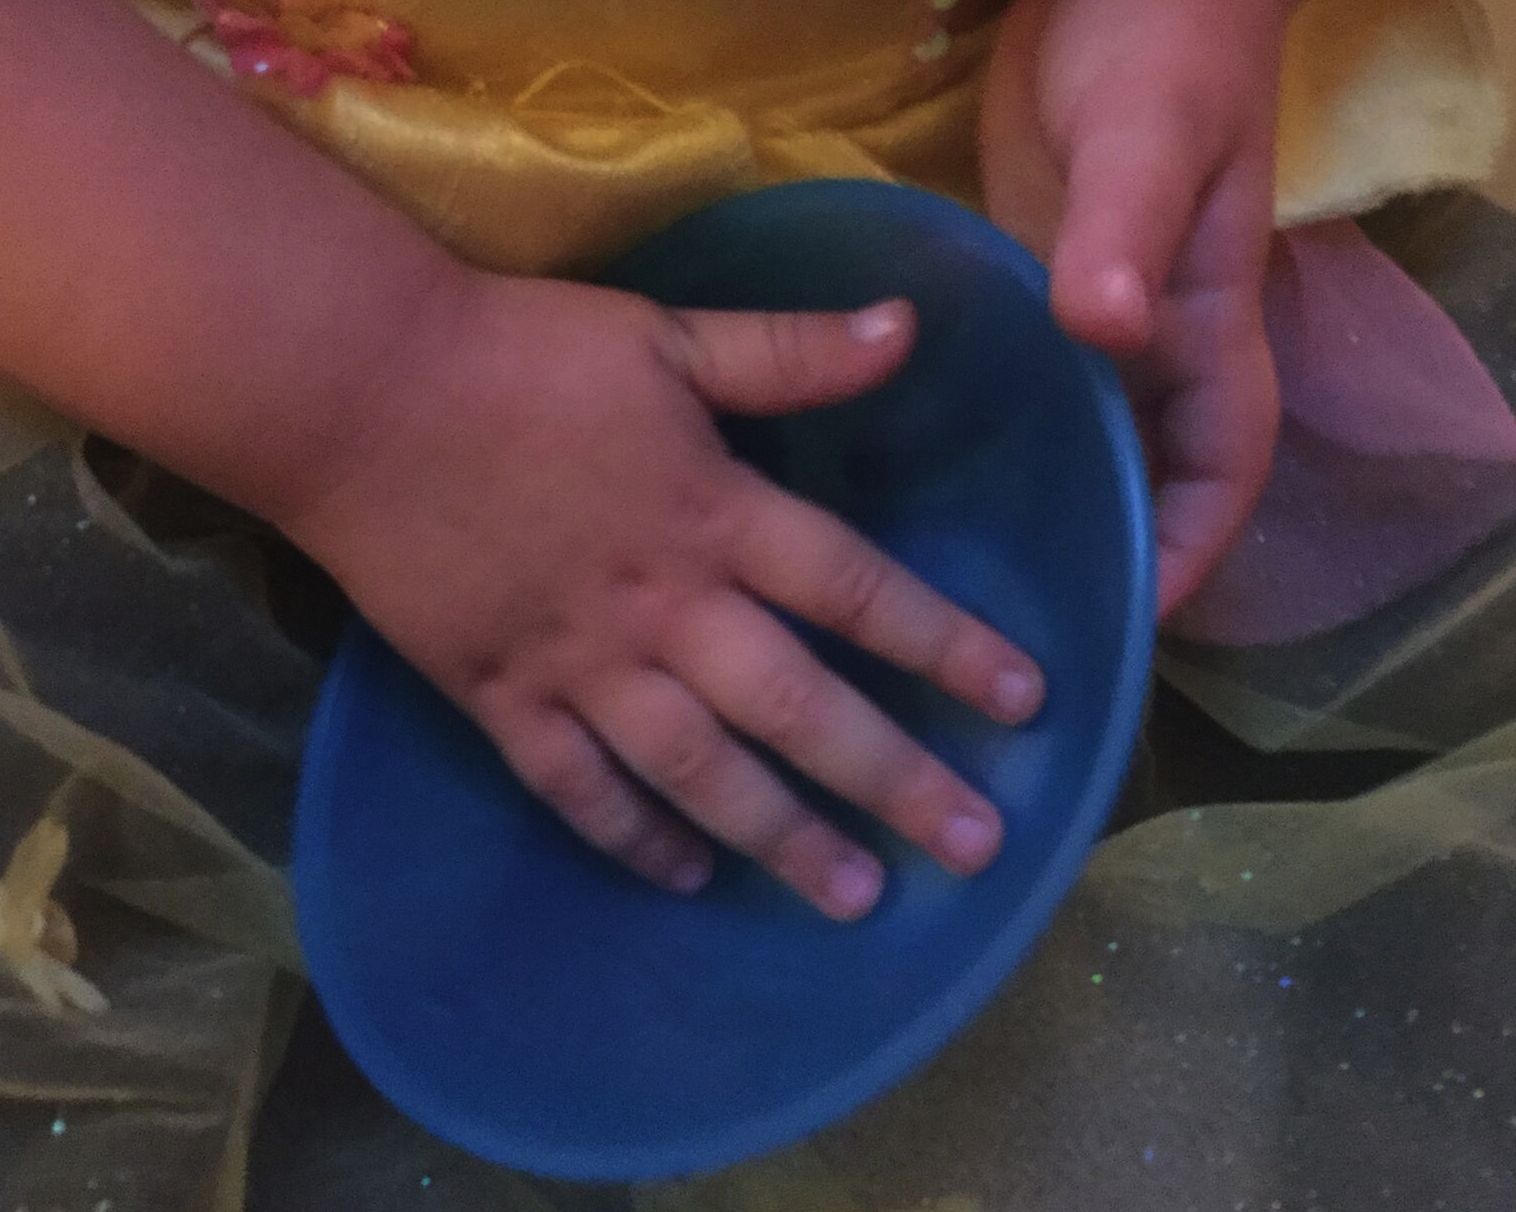 A child's hands explore a bowl.